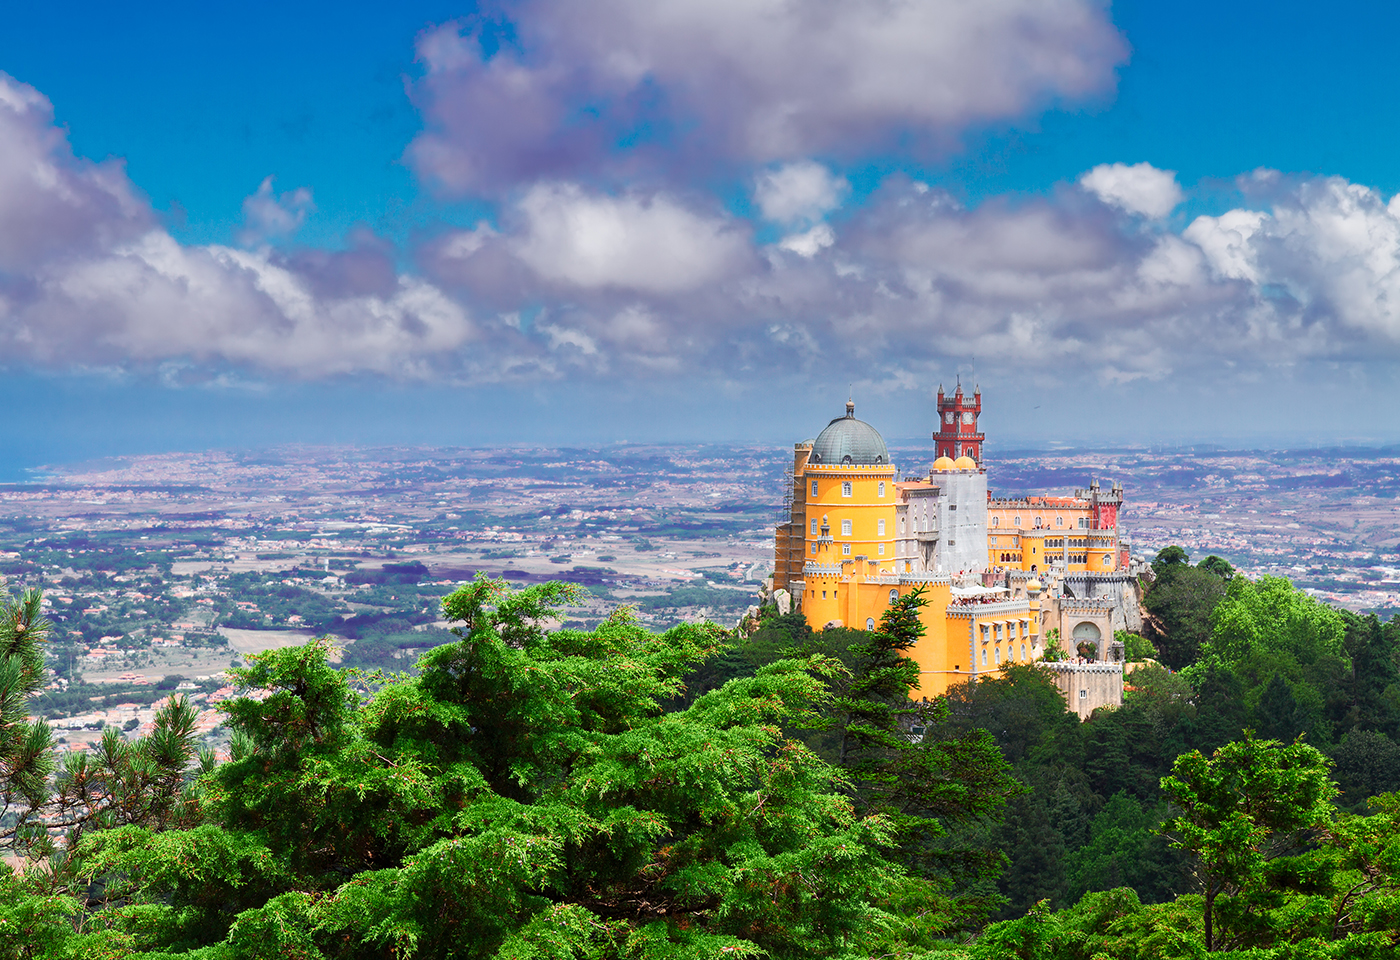 Mapa de Portugal: ¿qué lugares merece la pena visitar?